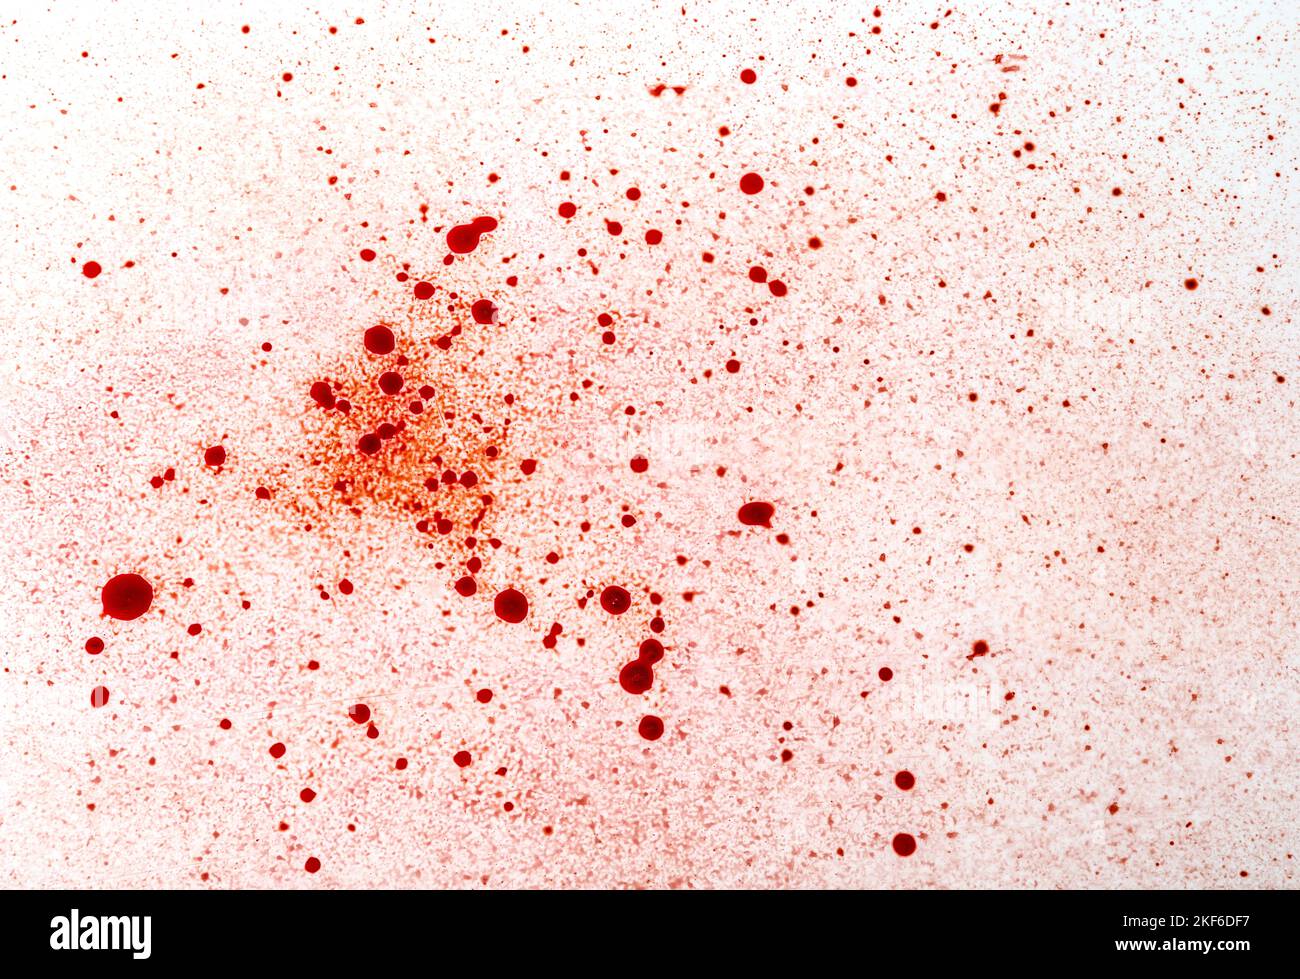 Rotes Blut tropft und spritzt auf weißem Hintergrund. Halloween blutiger Hintergrund. Stockfoto